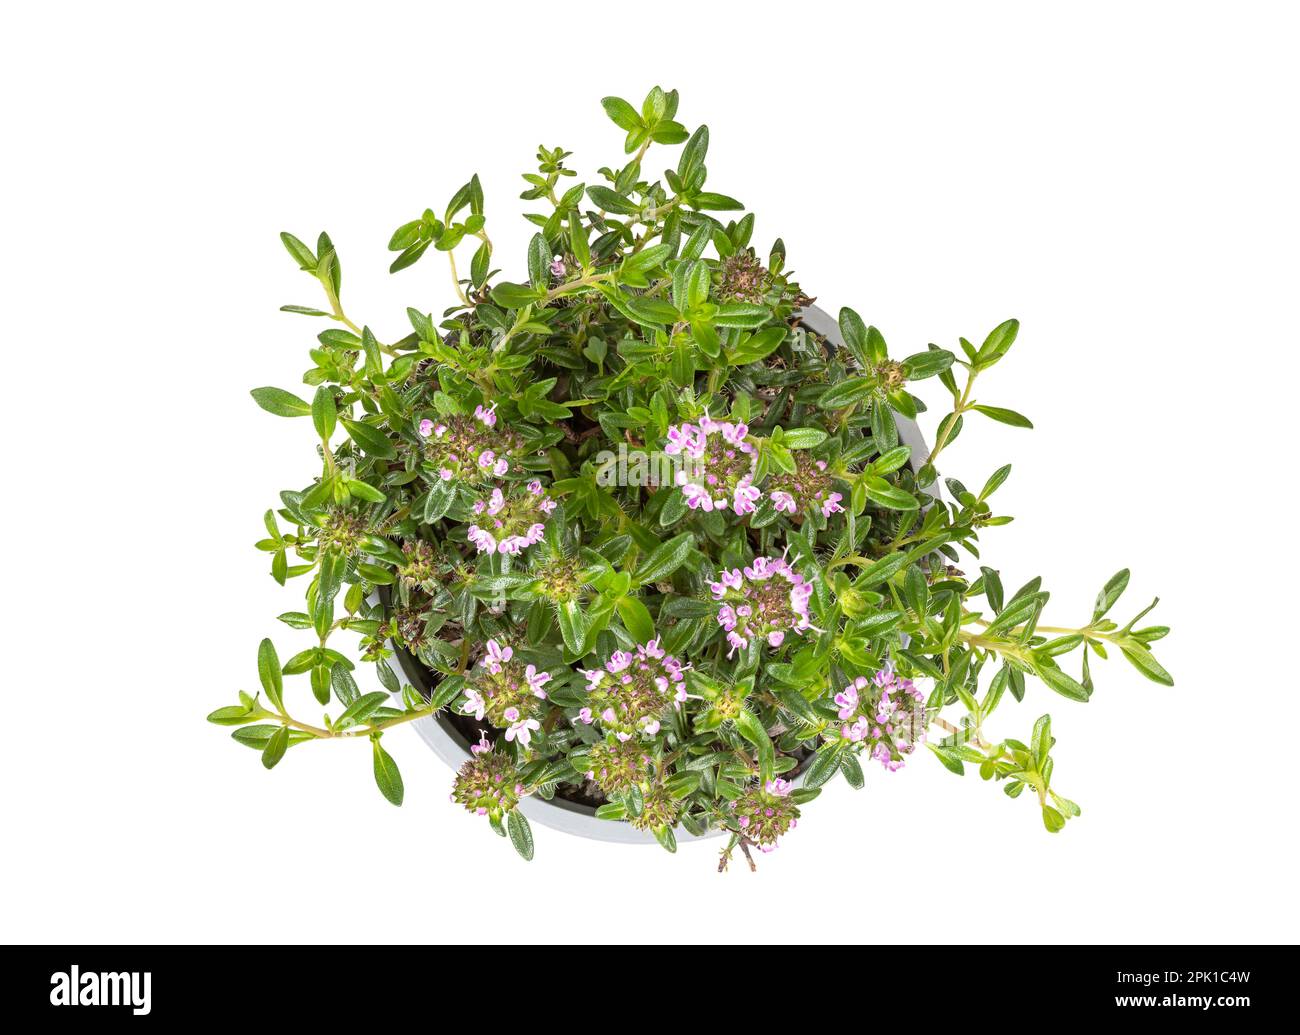 Winterpfeffer, junge Pflanze in einem grauen Plastiktopf. Satureja montana, auch bekannt als bergige Pfefferkraut, mit blassem Lavendel. Als kulinarisches Kraut verwendet. Stockfoto